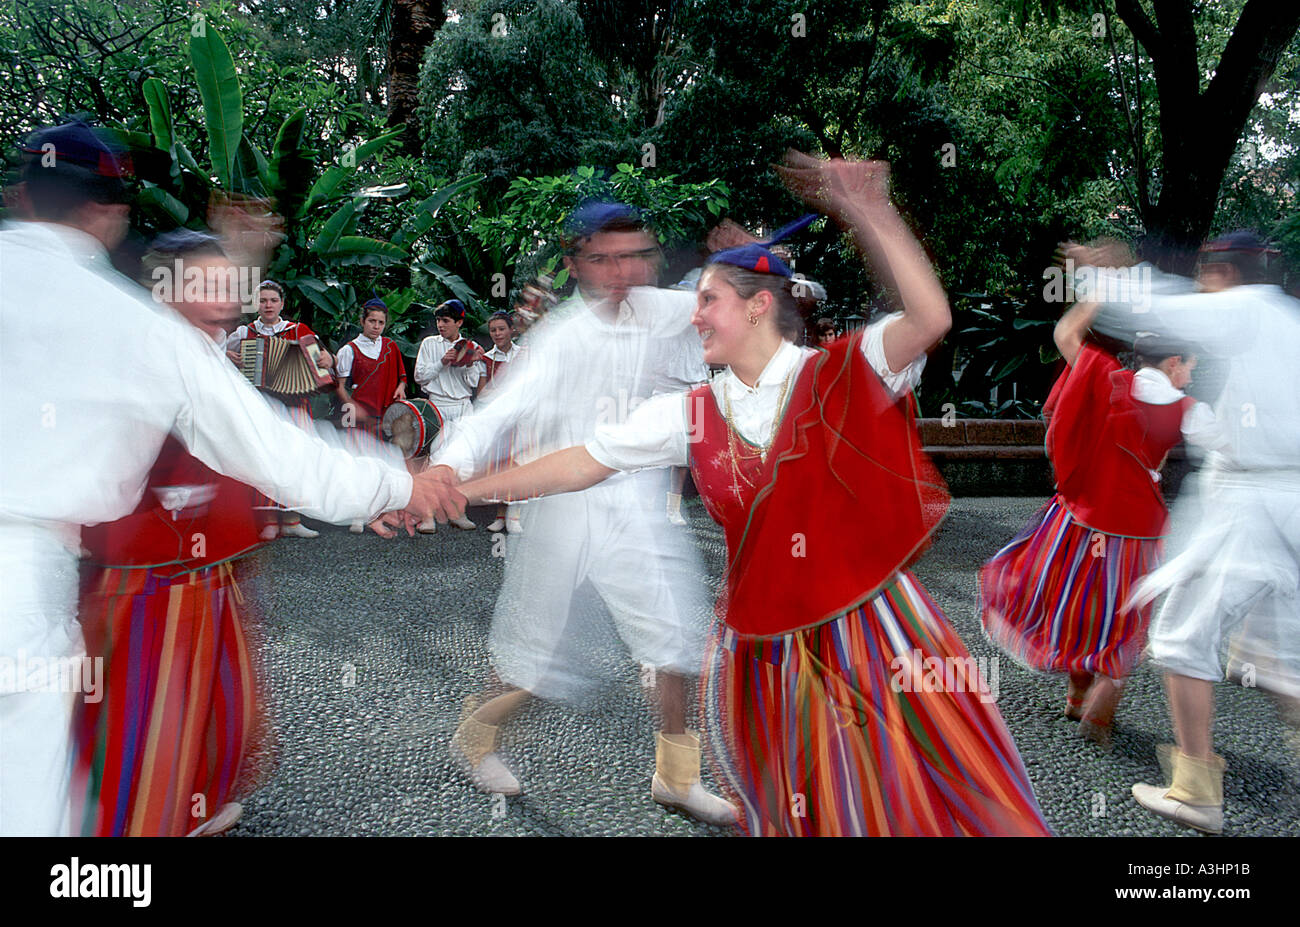 Gruppo Folcloric di Camacha dancing per turisti, Camacha, Isola di Madeira, Portogallo, Europa Foto Stock